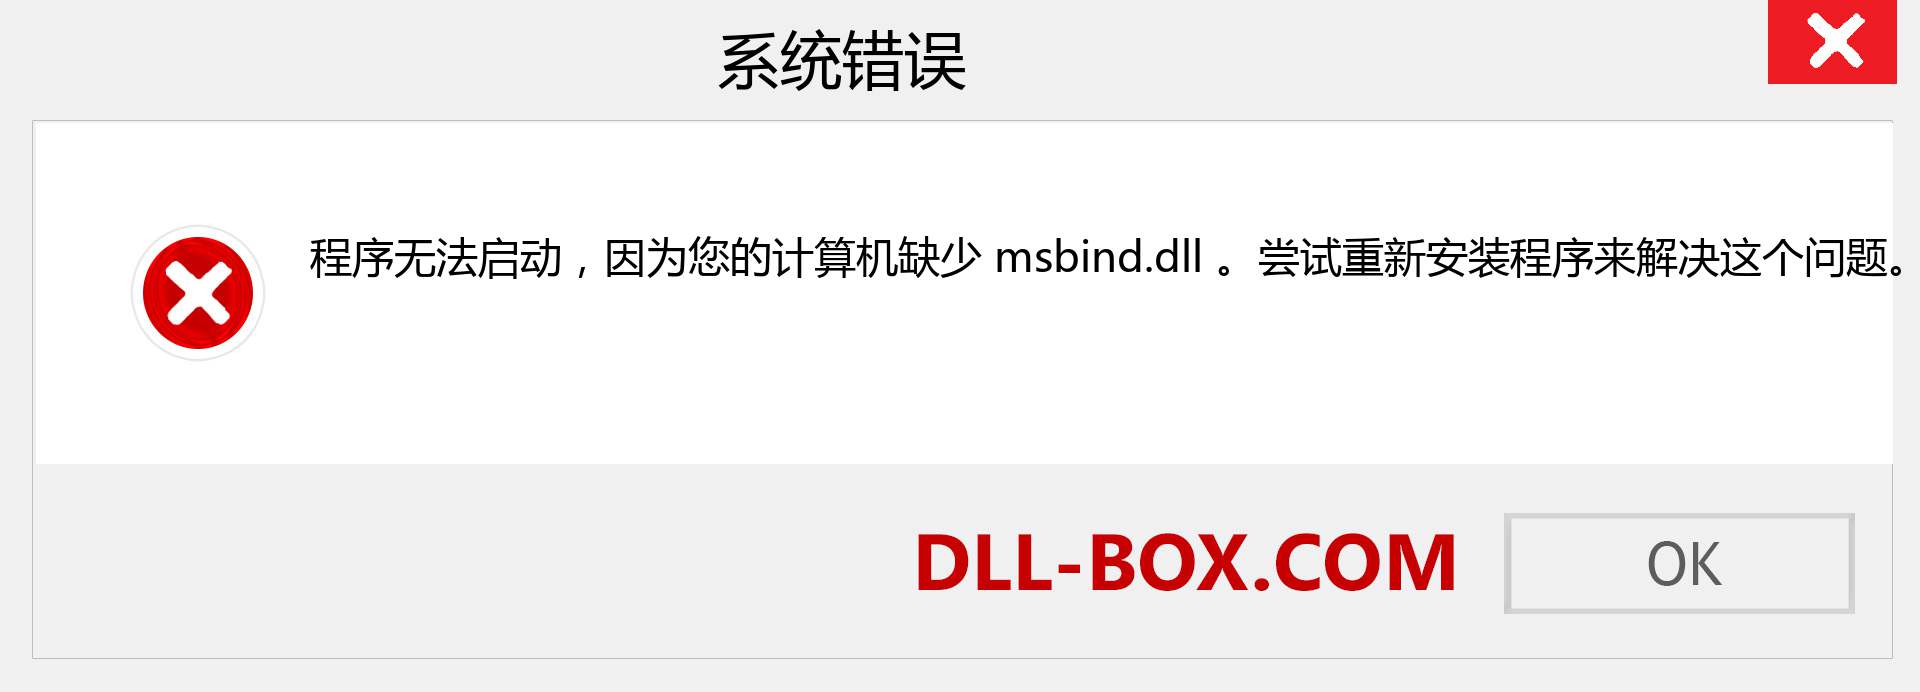 msbind.dll 文件丢失？。 适用于 Windows 7、8、10 的下载 - 修复 Windows、照片、图像上的 msbind dll 丢失错误